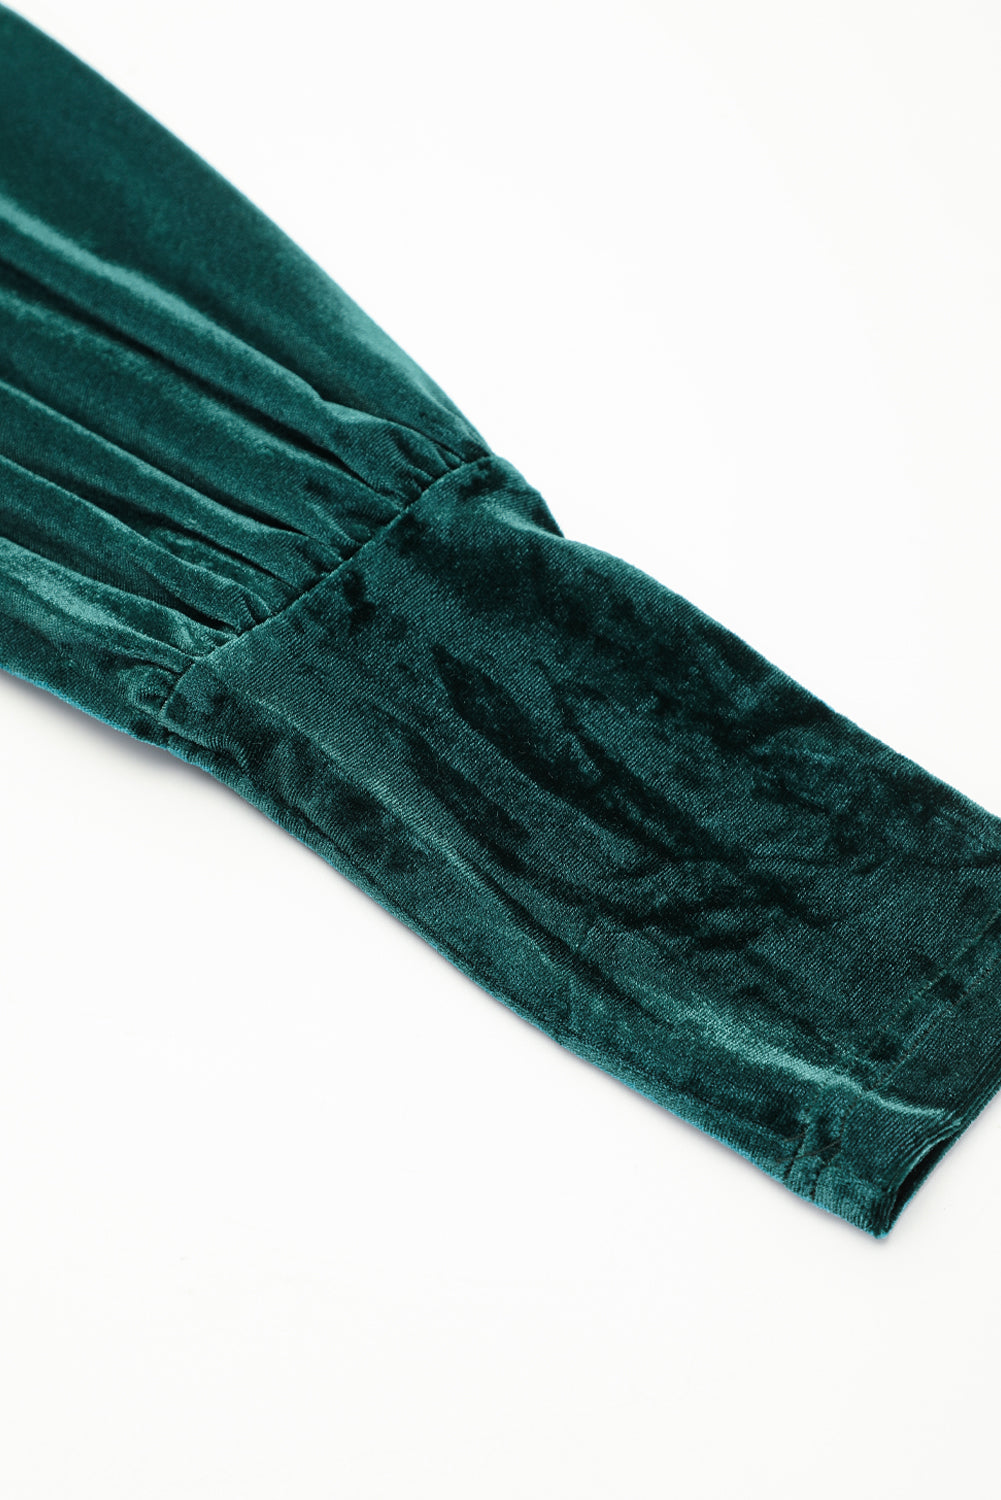 Zelena žametna obleka z naborki in oprijetimi rokavi